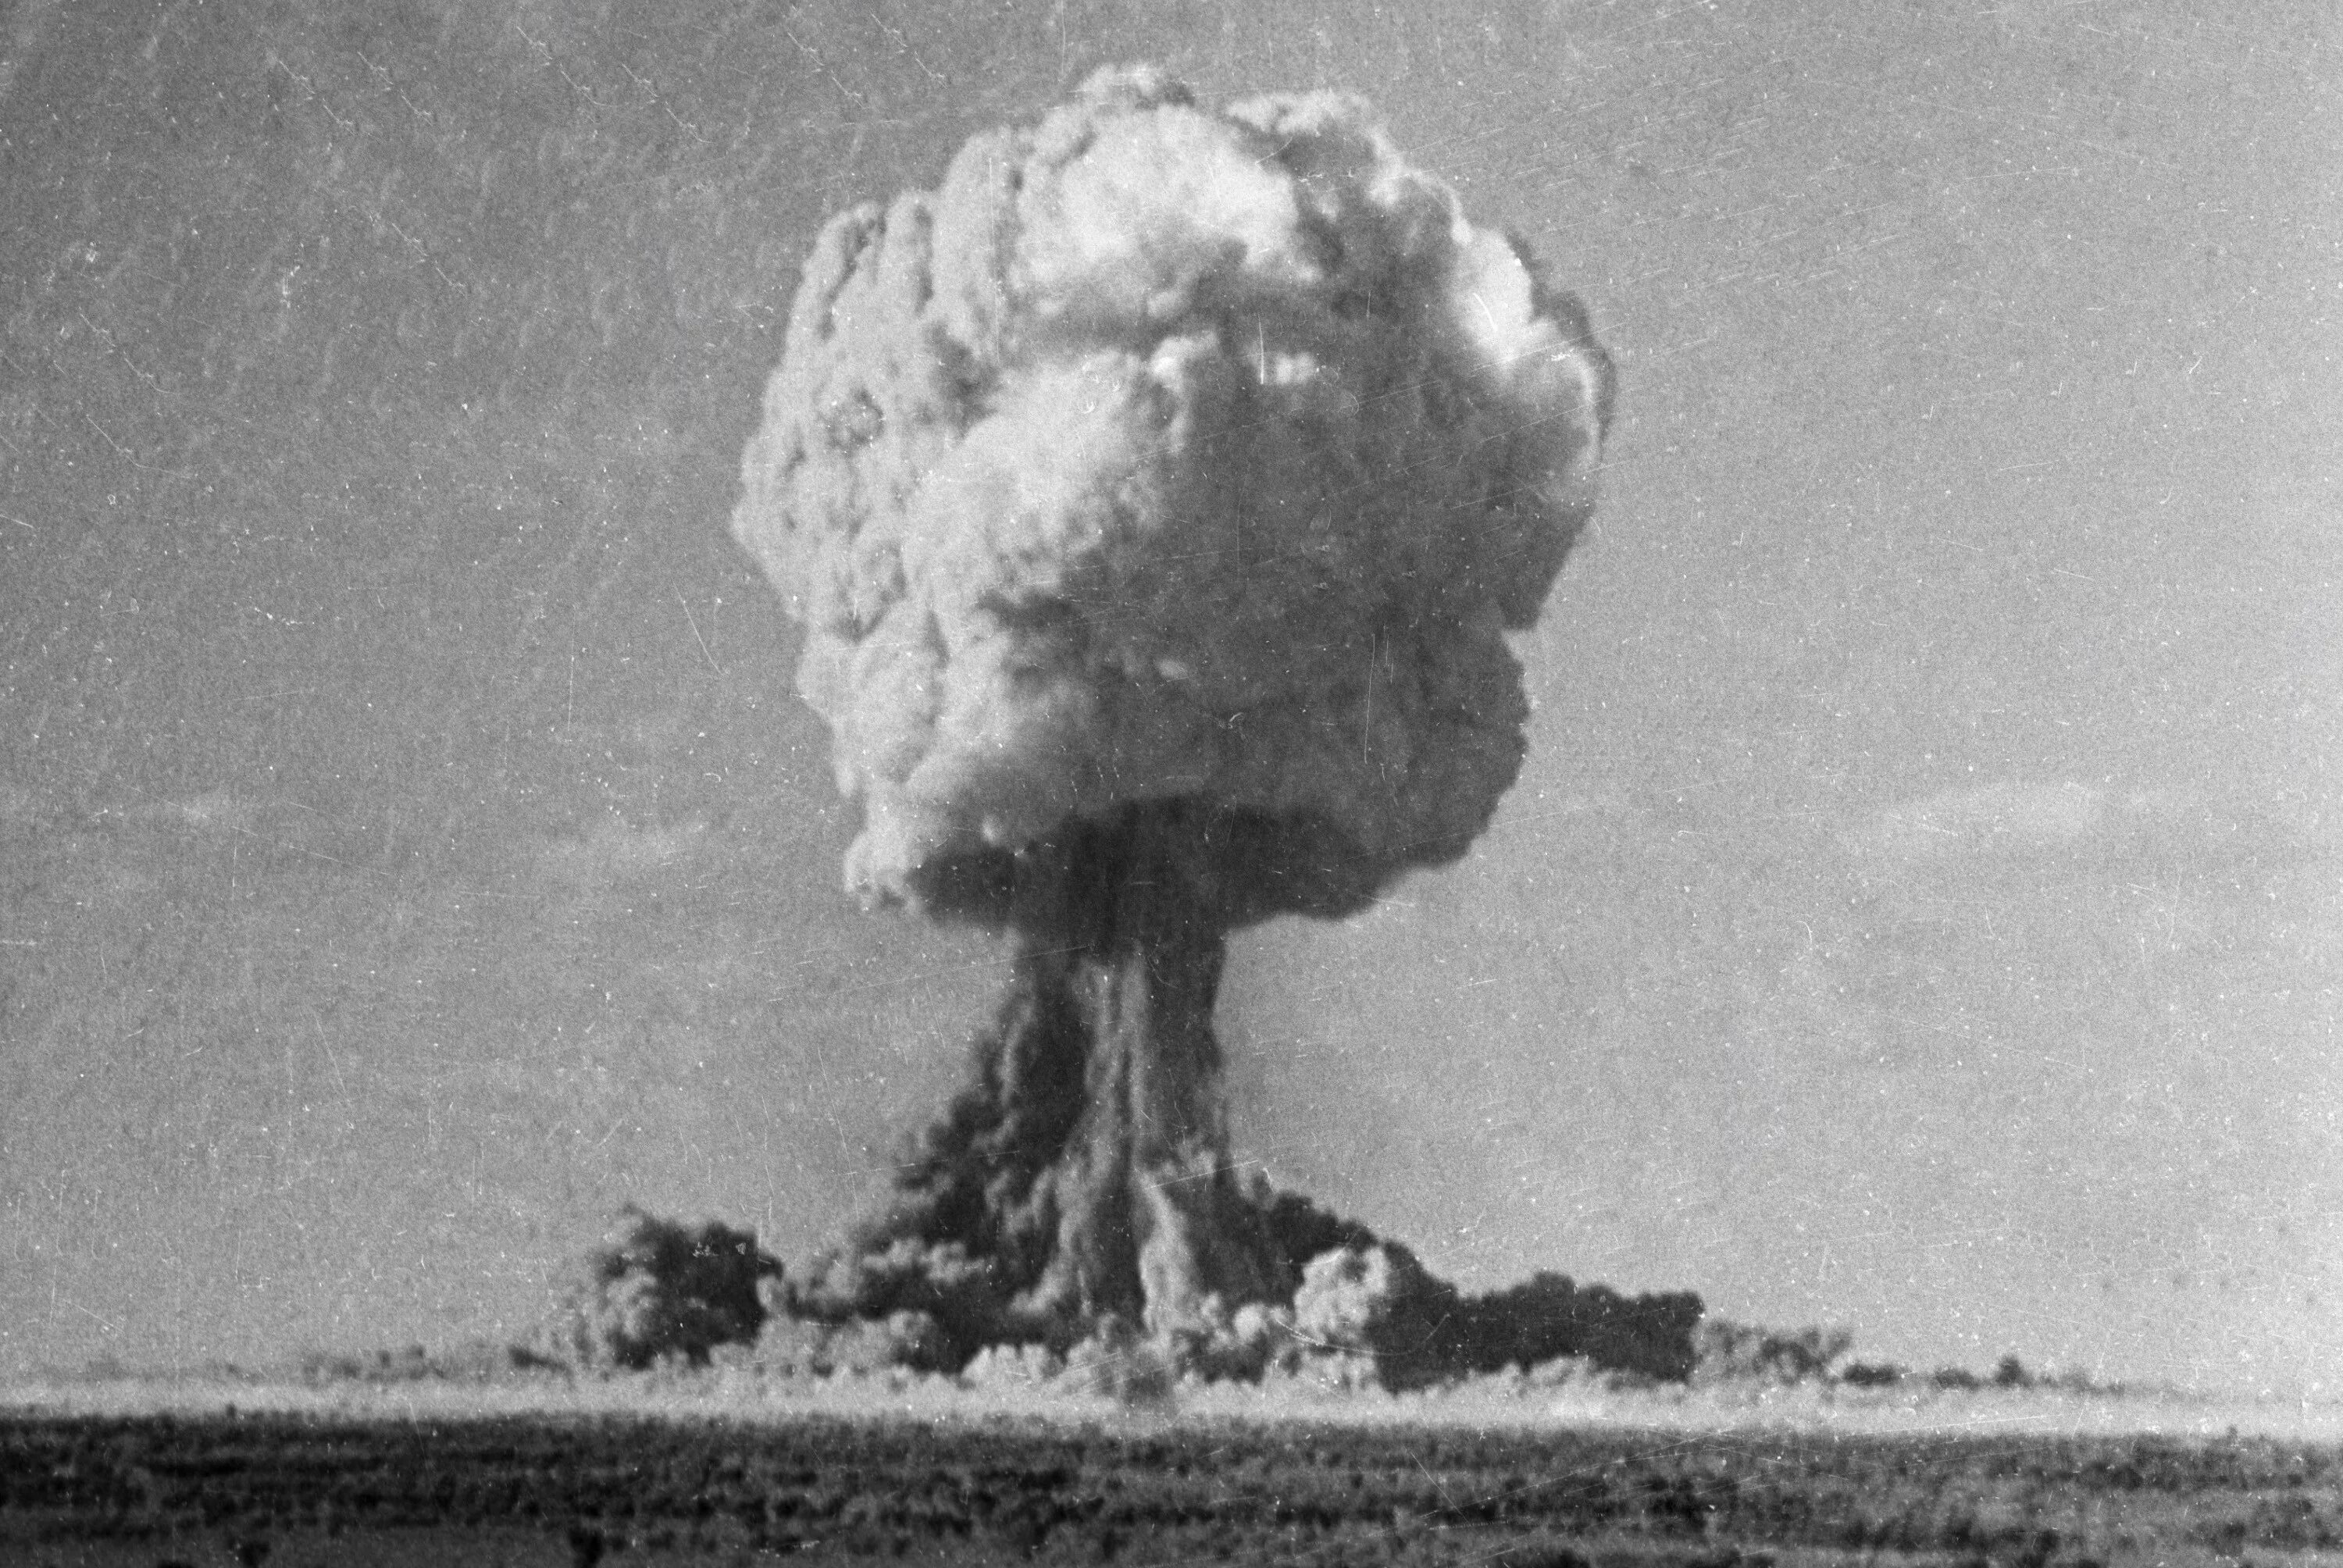 Испытание первой советской ядерной бомбы год. Испытание атомной бомбы в СССР. Атомная бомба РДС-1 взрыв. Испытание Советской атомной бомбы 1949. Испытание первой атомной бомбы в СССР. РДС-1.